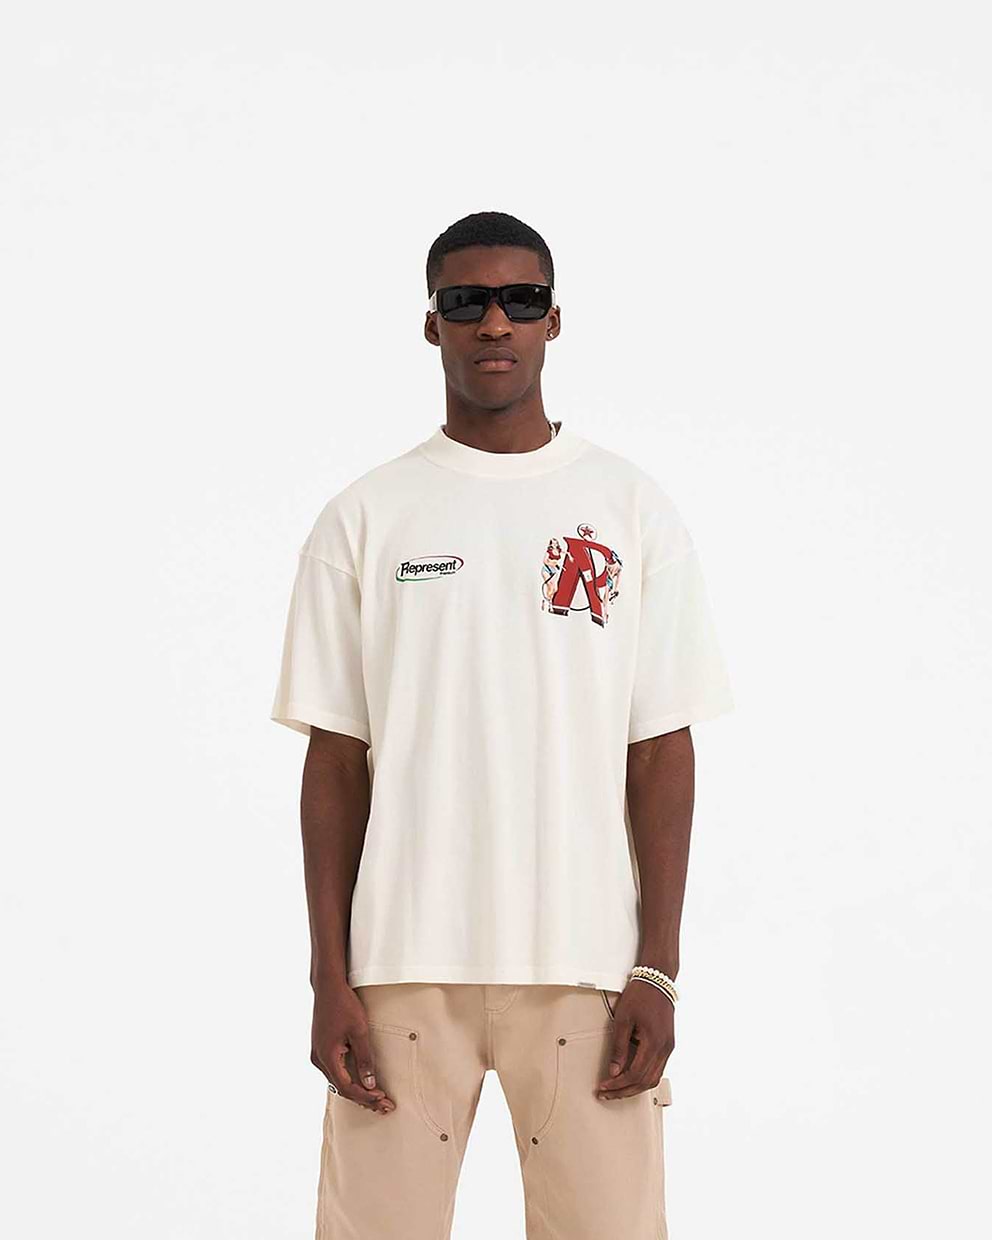 Represent Premium T-Shirt - Flat White